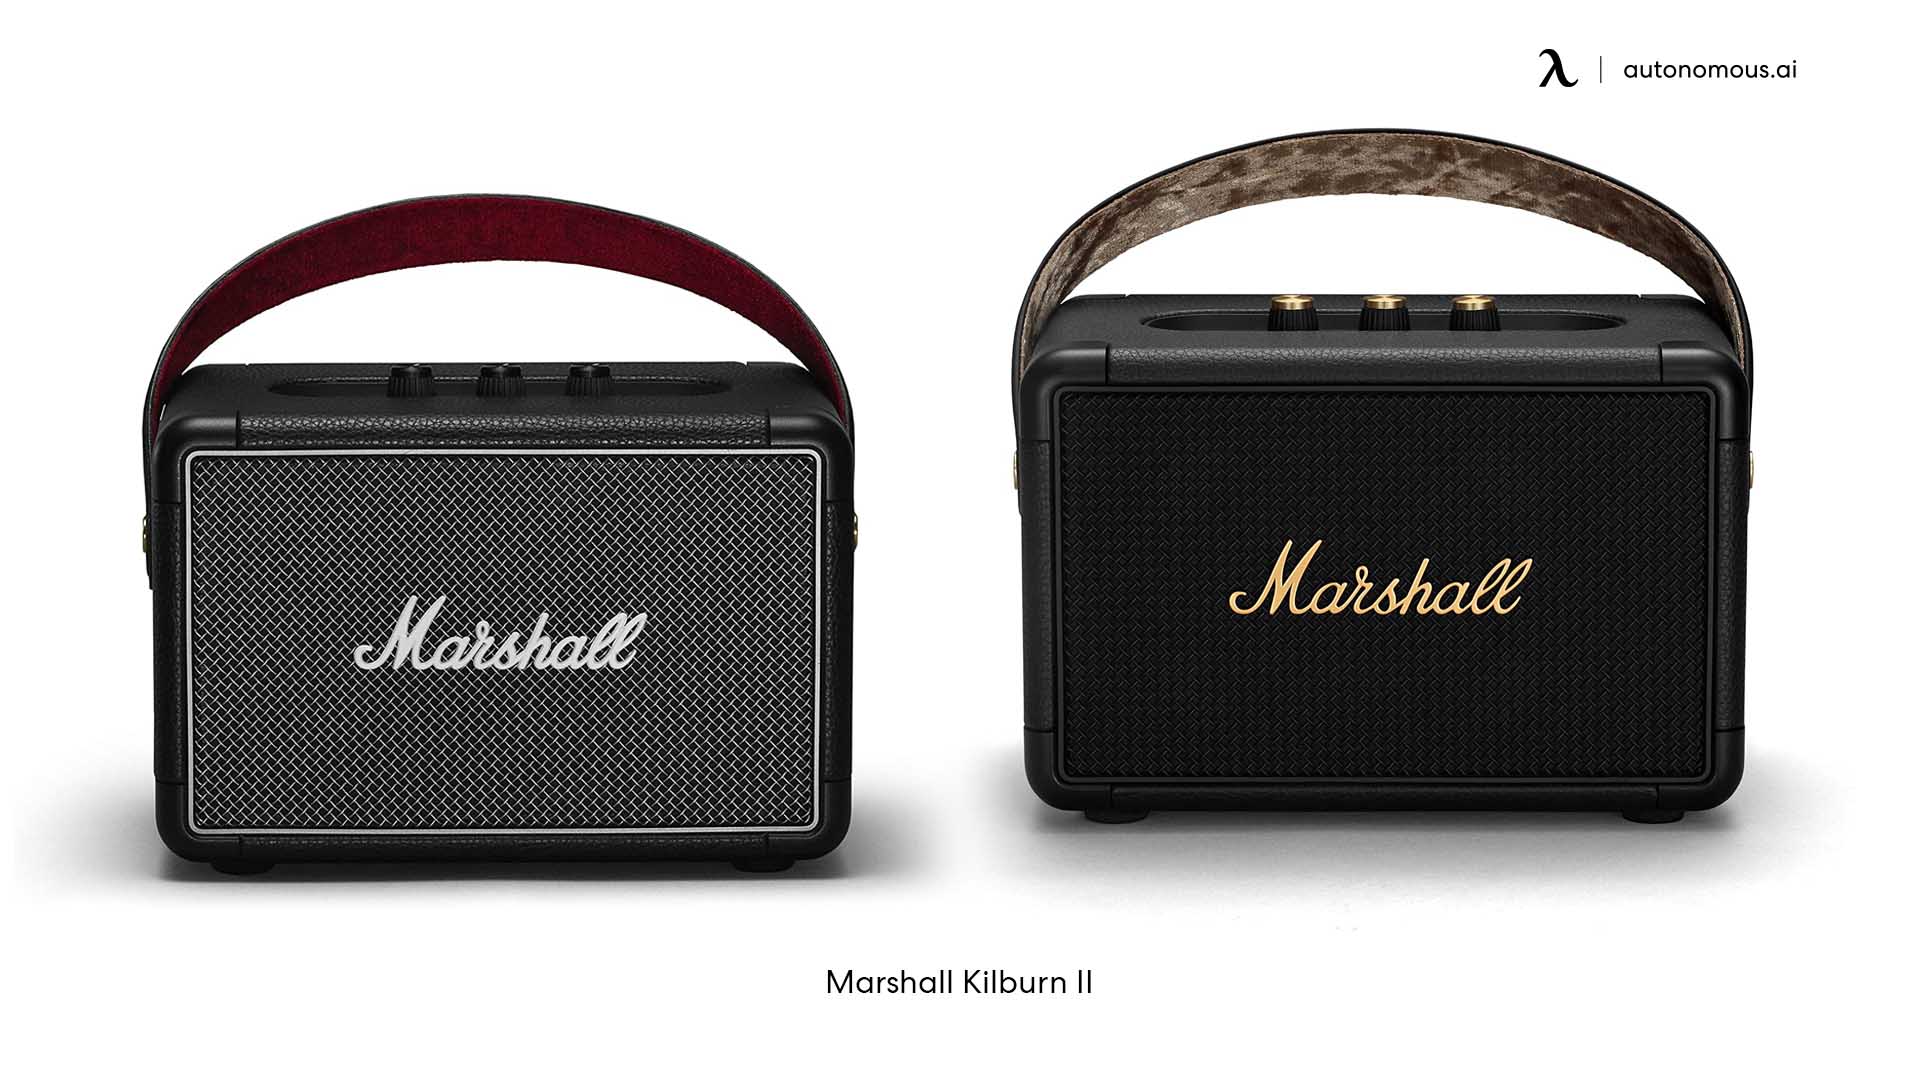 Marshall Kilburn II spider Bluetooth speaker